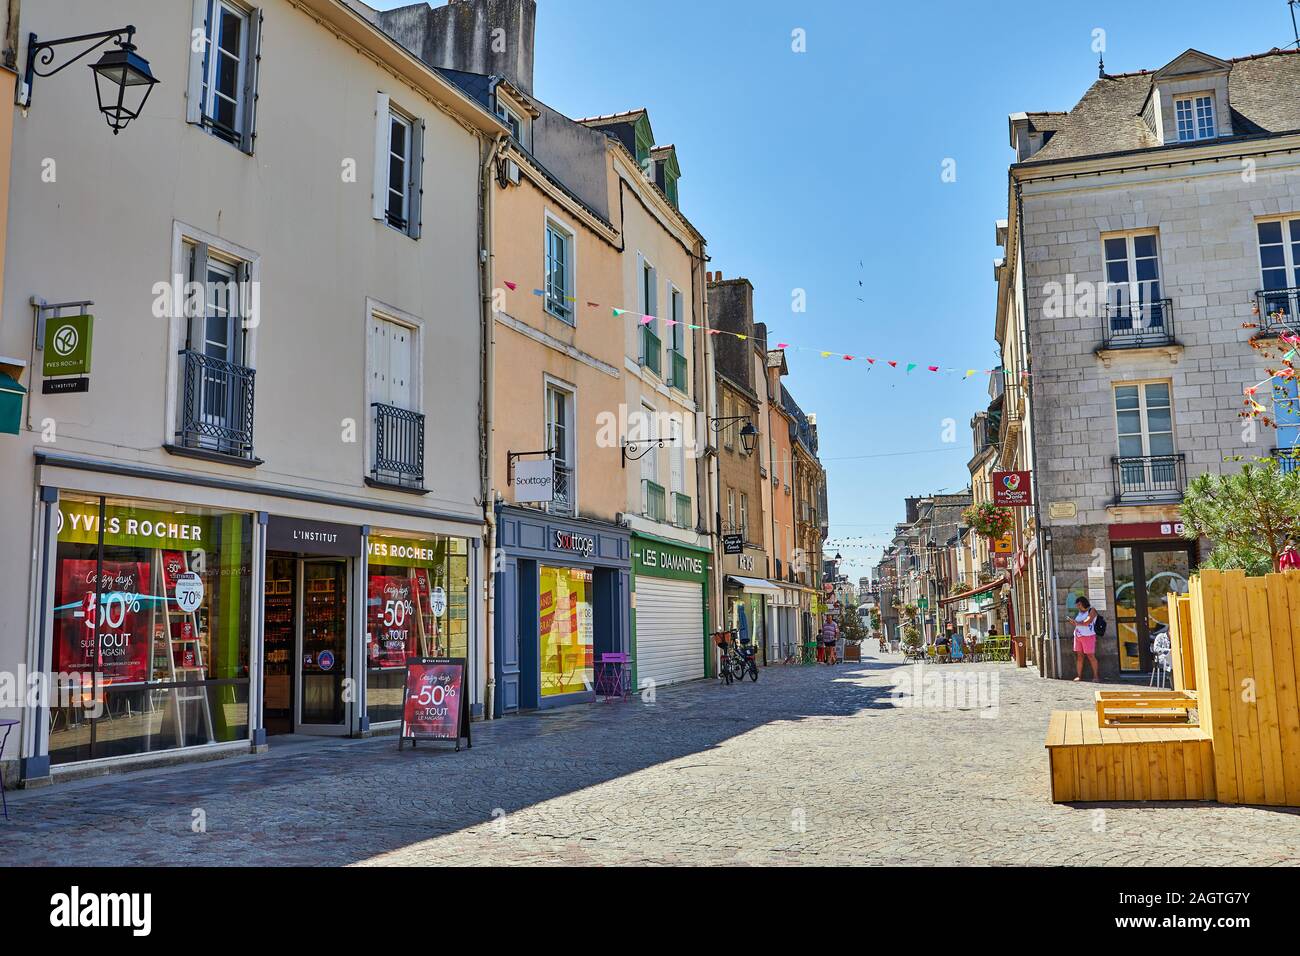 Image de Redon, Bretagne, France. Redon est une destination touristique populaire dans le sud de la Bretagne avec medeval bâtiments, commerces, gare, restau Banque D'Images